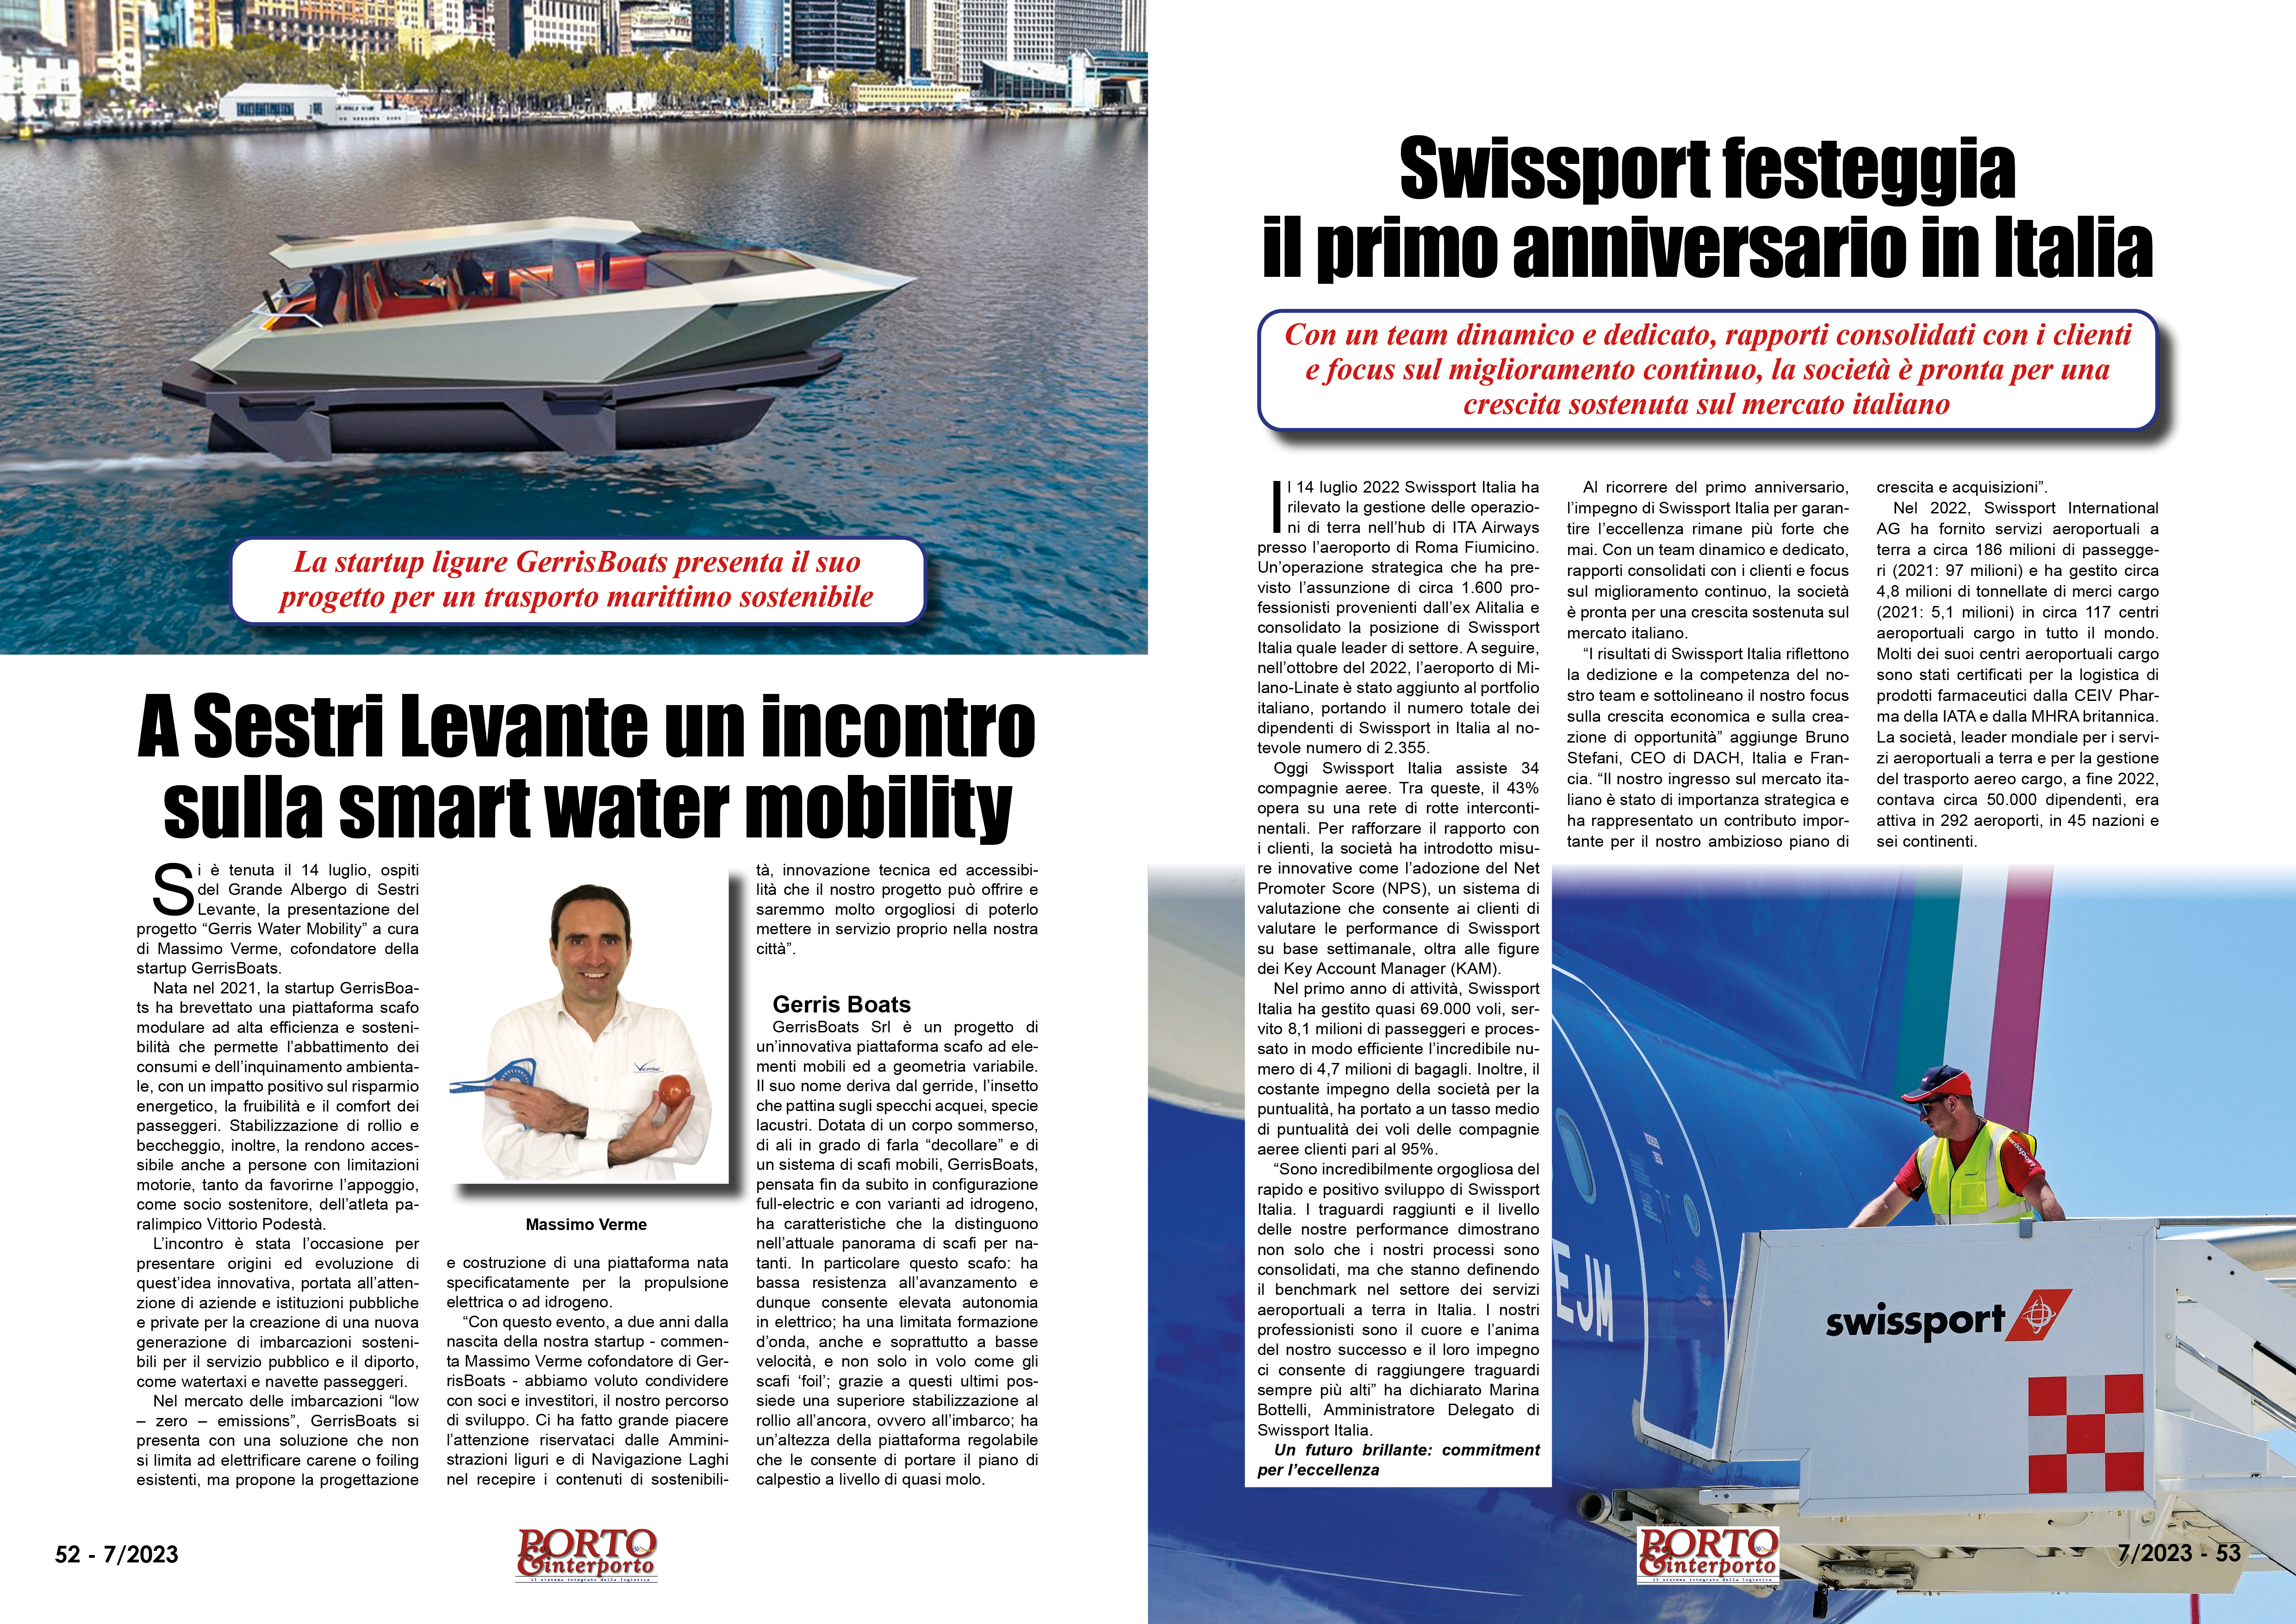 LUGLIO 2023 PAG. 53 - Swissport festeggia il primo anniversario in Italia